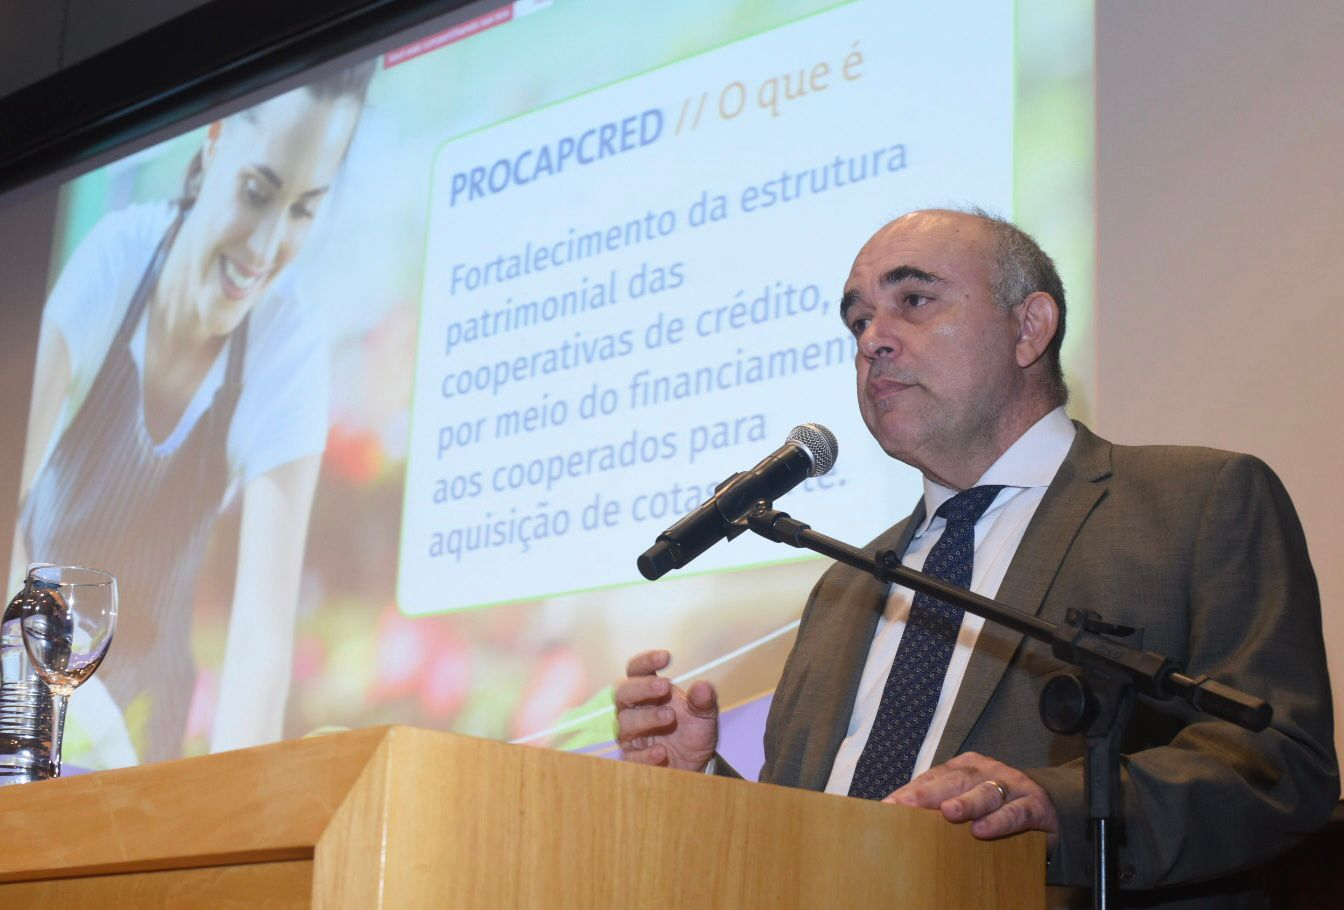 Alexandre Abreu, diretor financeiro do BNDES, anuncia mudanças no Procapcred